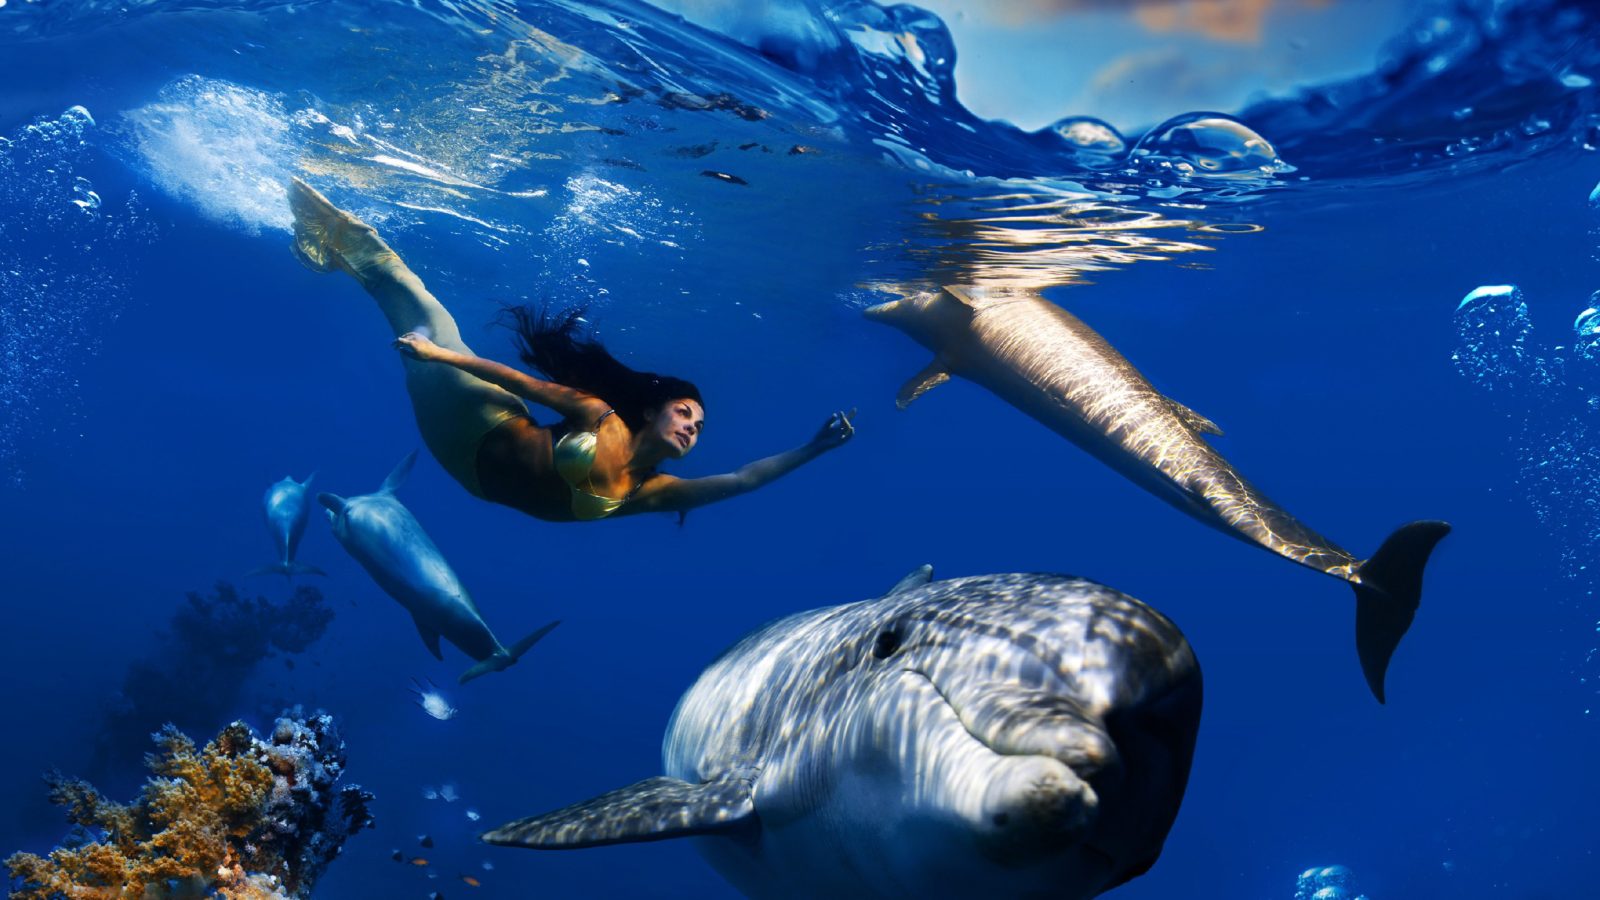 خلفيات أجمل صور الطبيعة الخلابة تحت الماء – صور خلفيات عالية الدقة HD Wallpapers